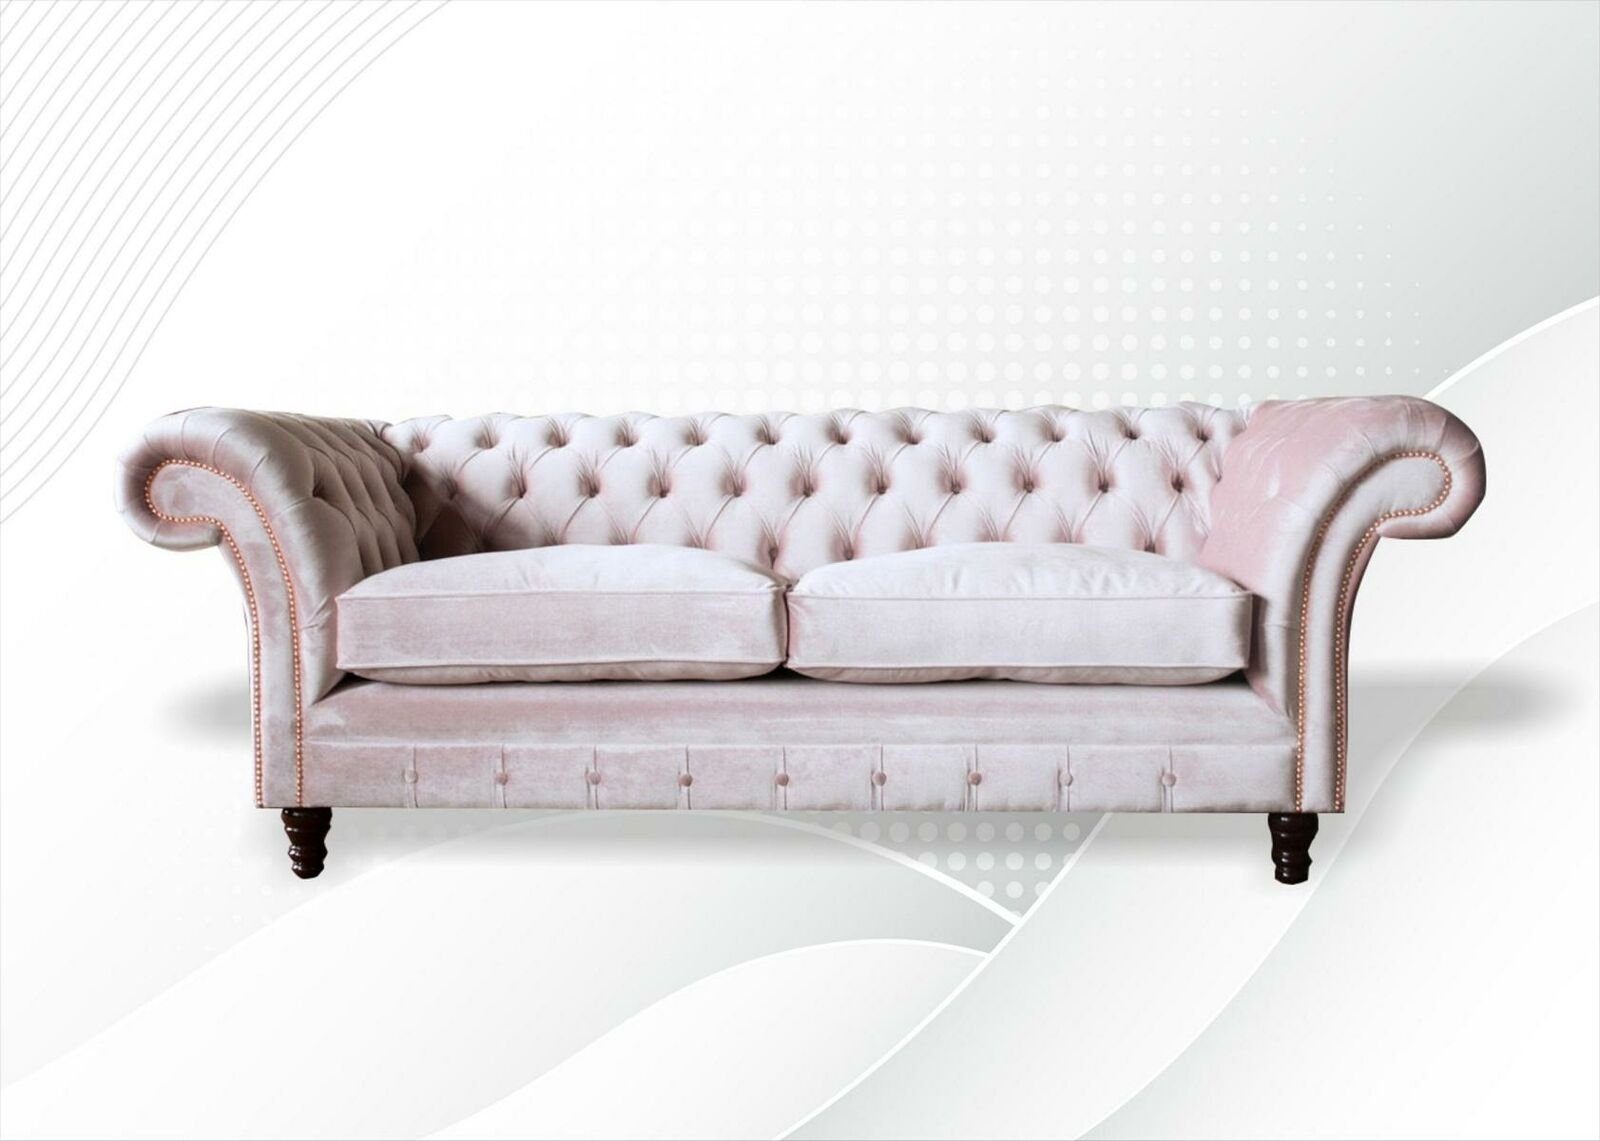 Neuer 3-er, Europe Rosa Dreisitzer Möbel Design Made in JVmoebel Luxus Chesterfield Chesterfield-Sofa